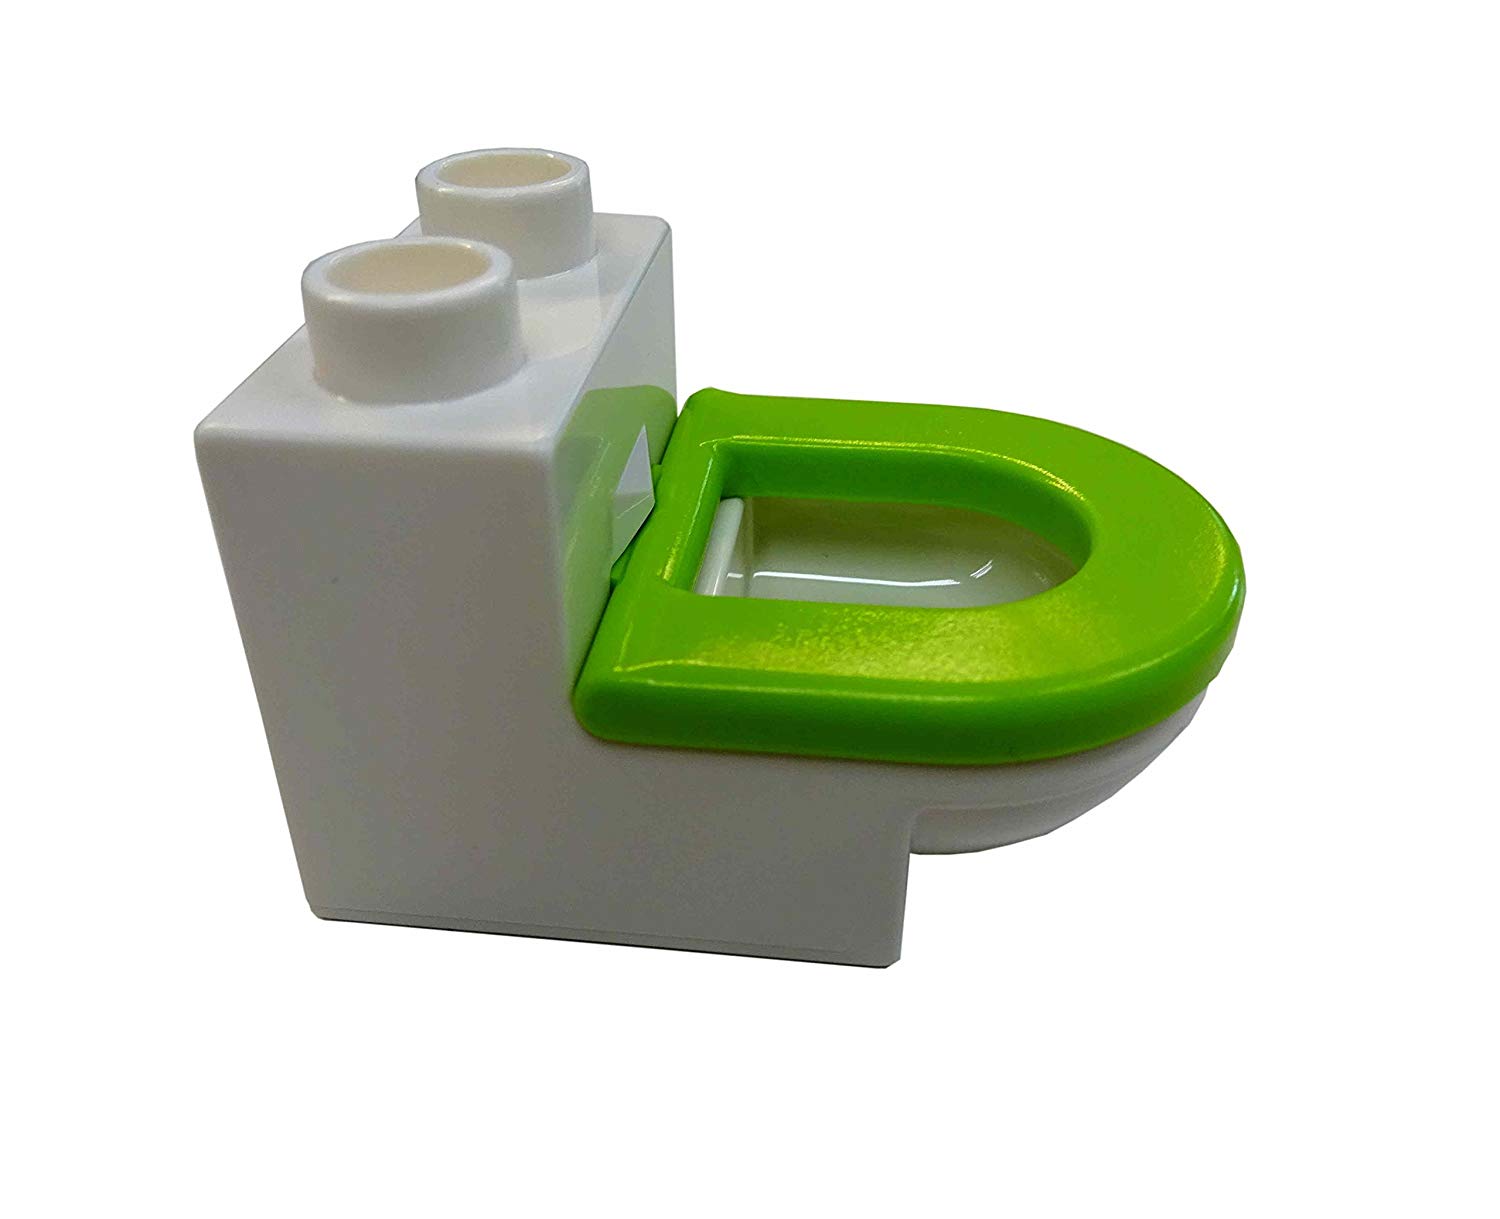 Lego Duplo Toilet/Litter Tray